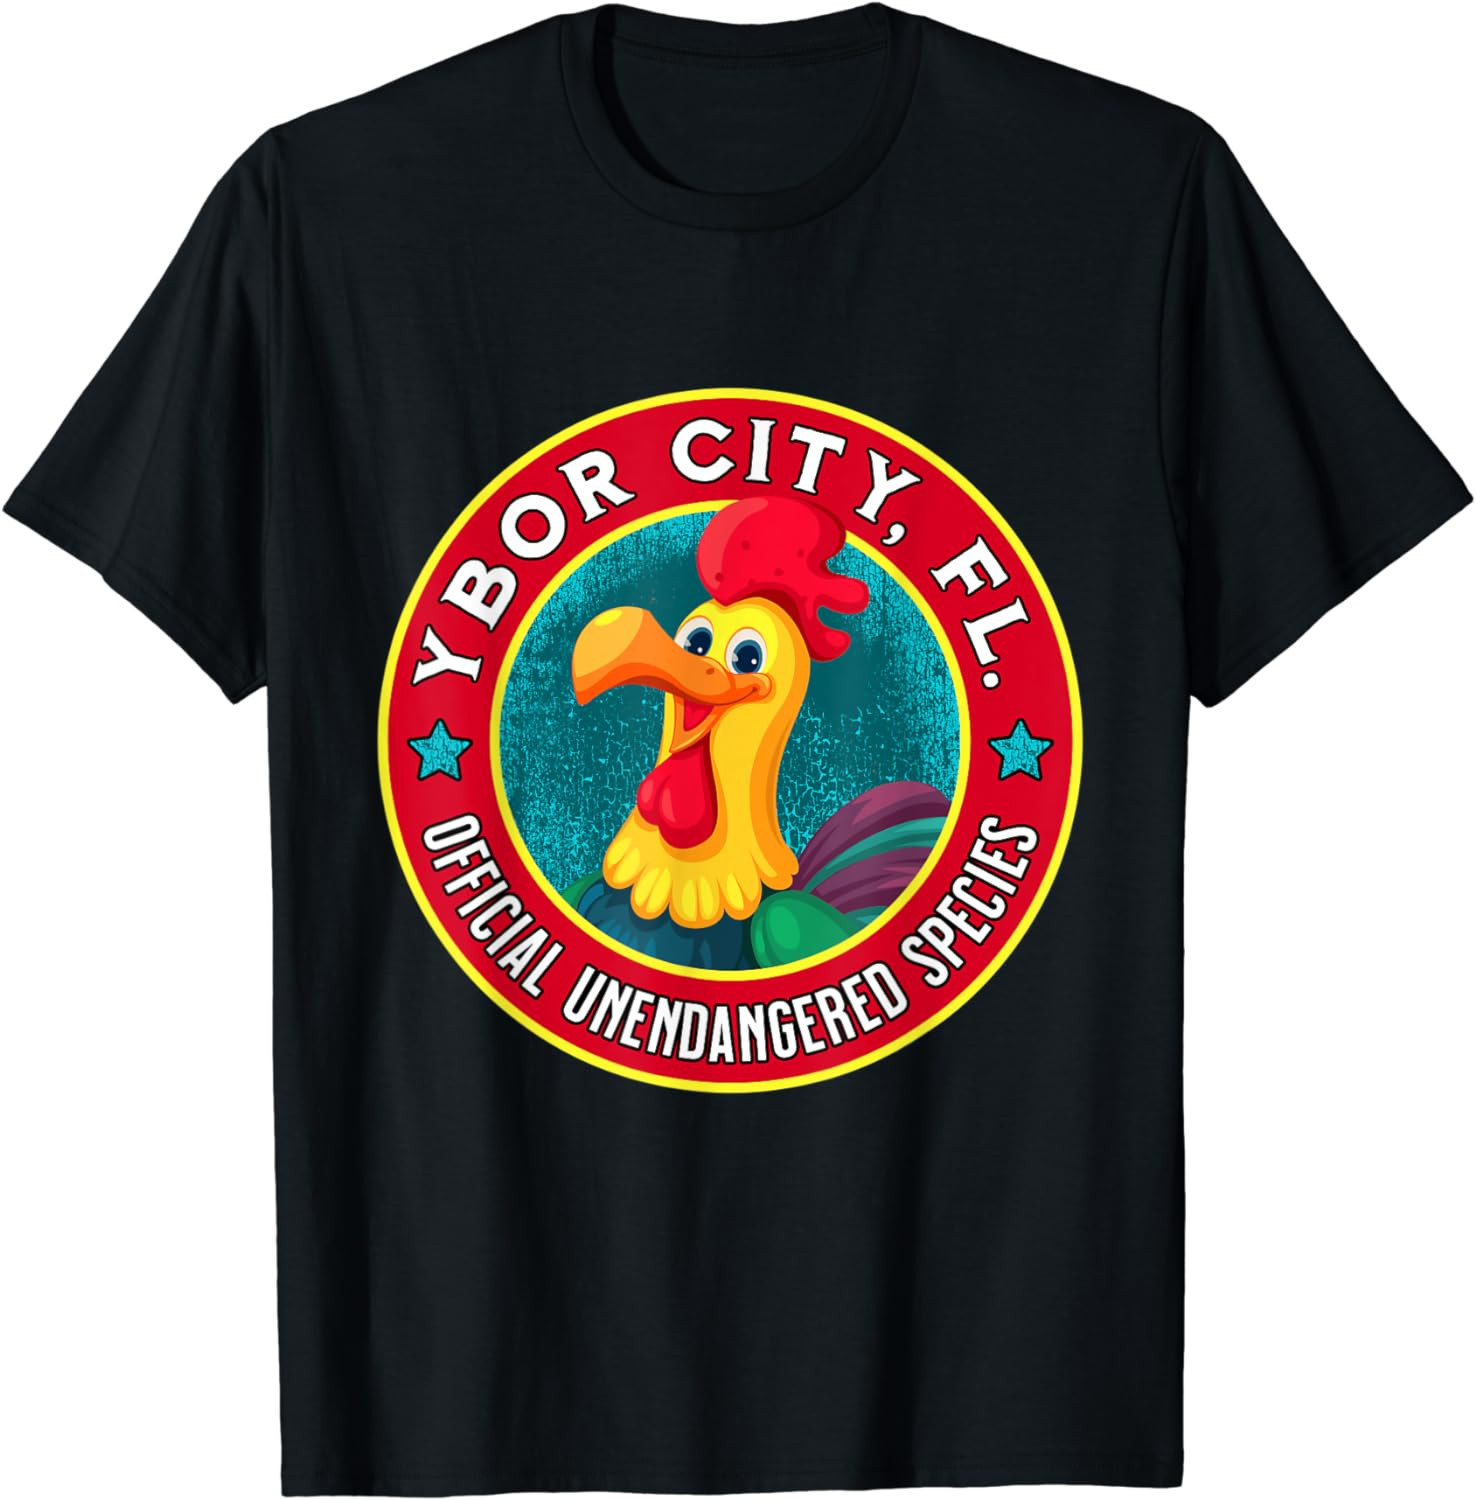 Ybor City Chicken Official Unendangered Species Souvenir T-Shirt